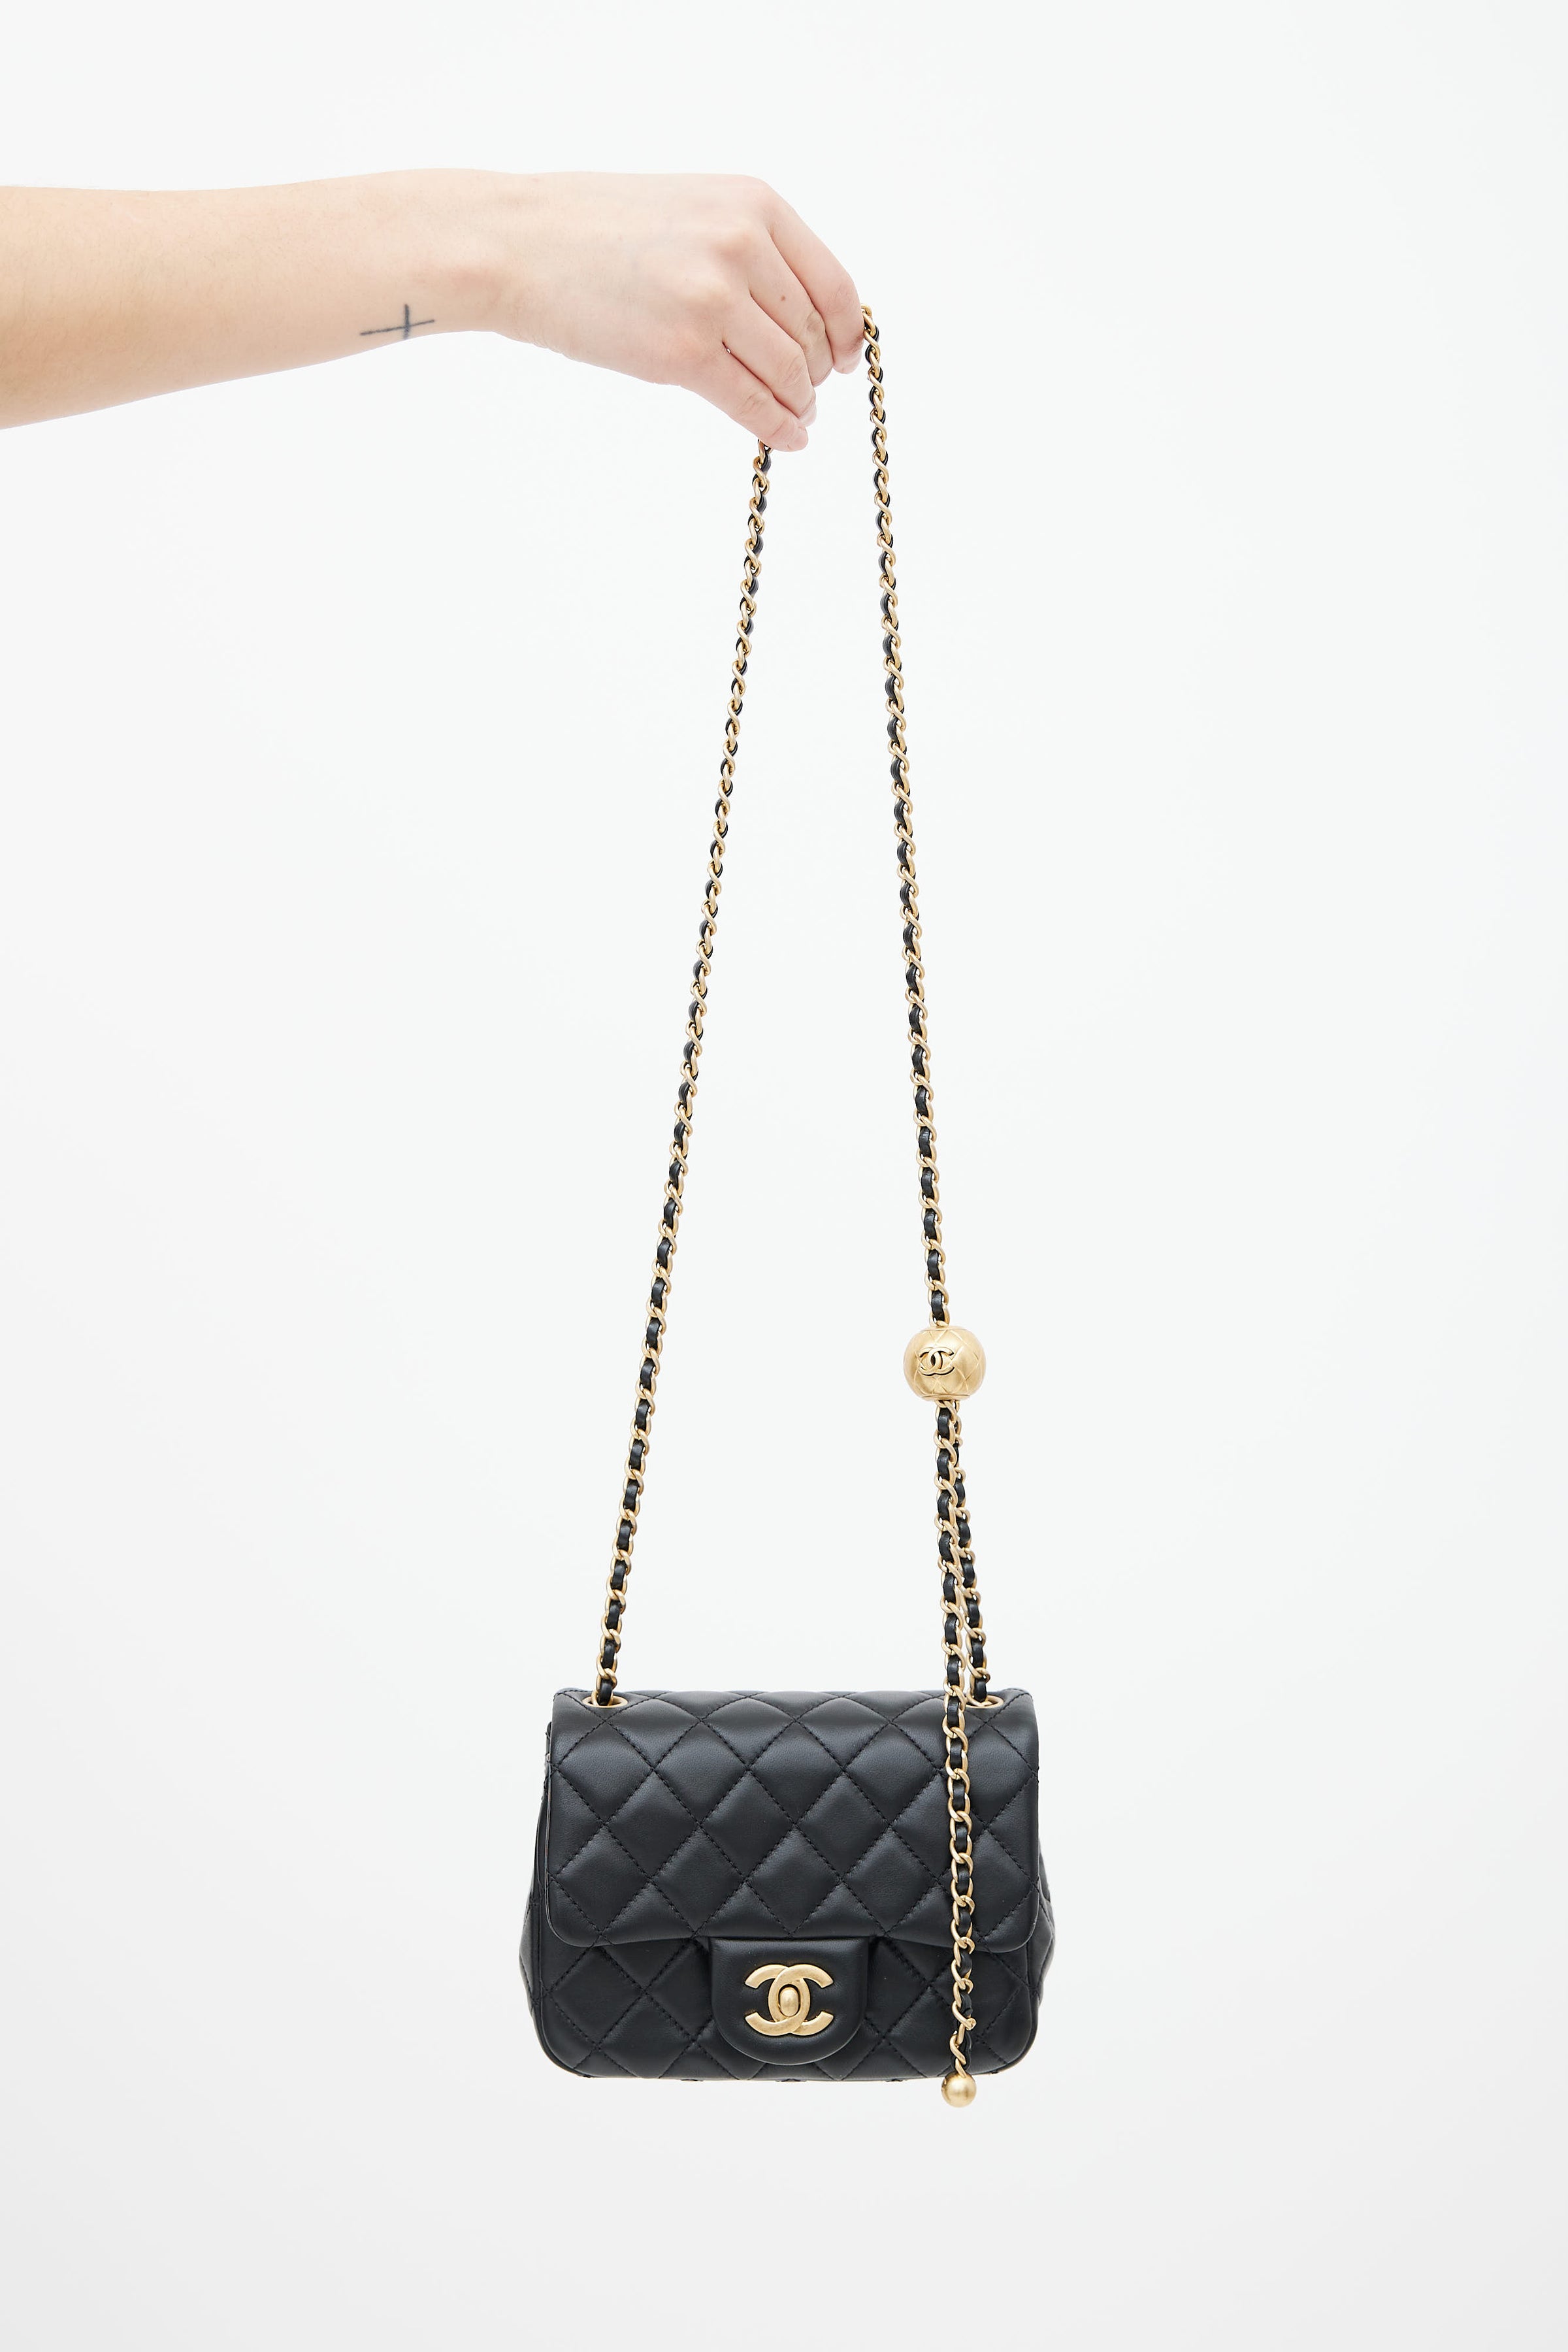 Chanel Black Vintage Vertical Quilt Mademoiselle Flap Bag Chanel  TLC